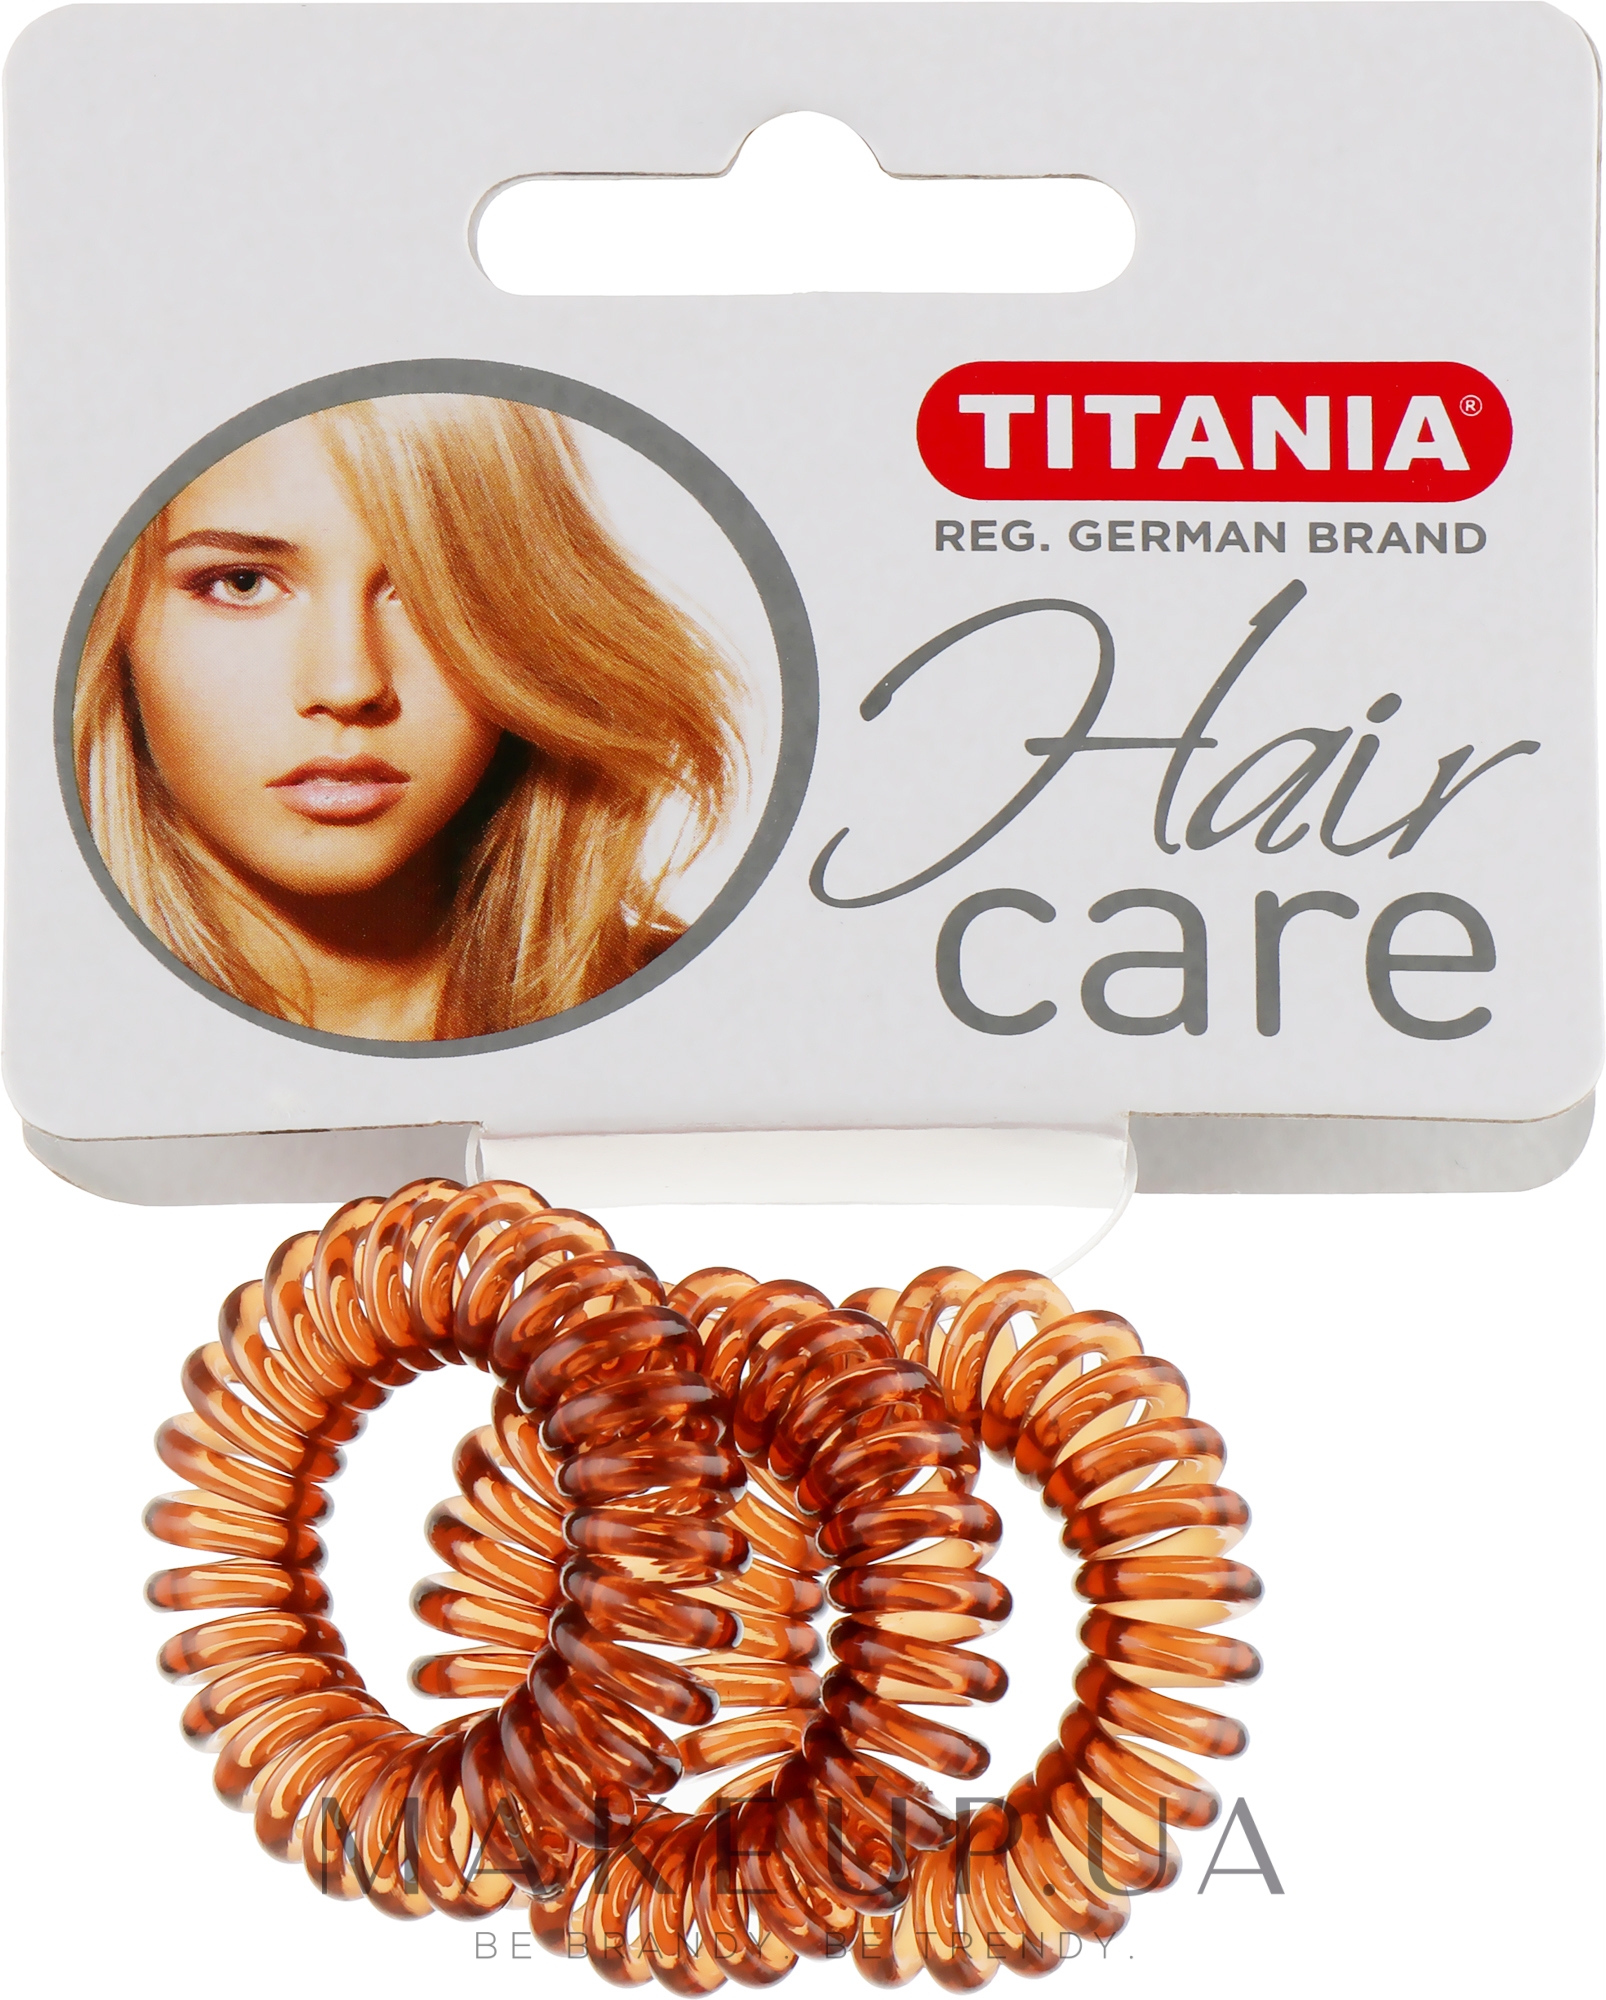 Резинка для волос пластмассовая "Anti Ziep", коричневая, 3шт, диаметр 2.5см - Titania — фото 3шт